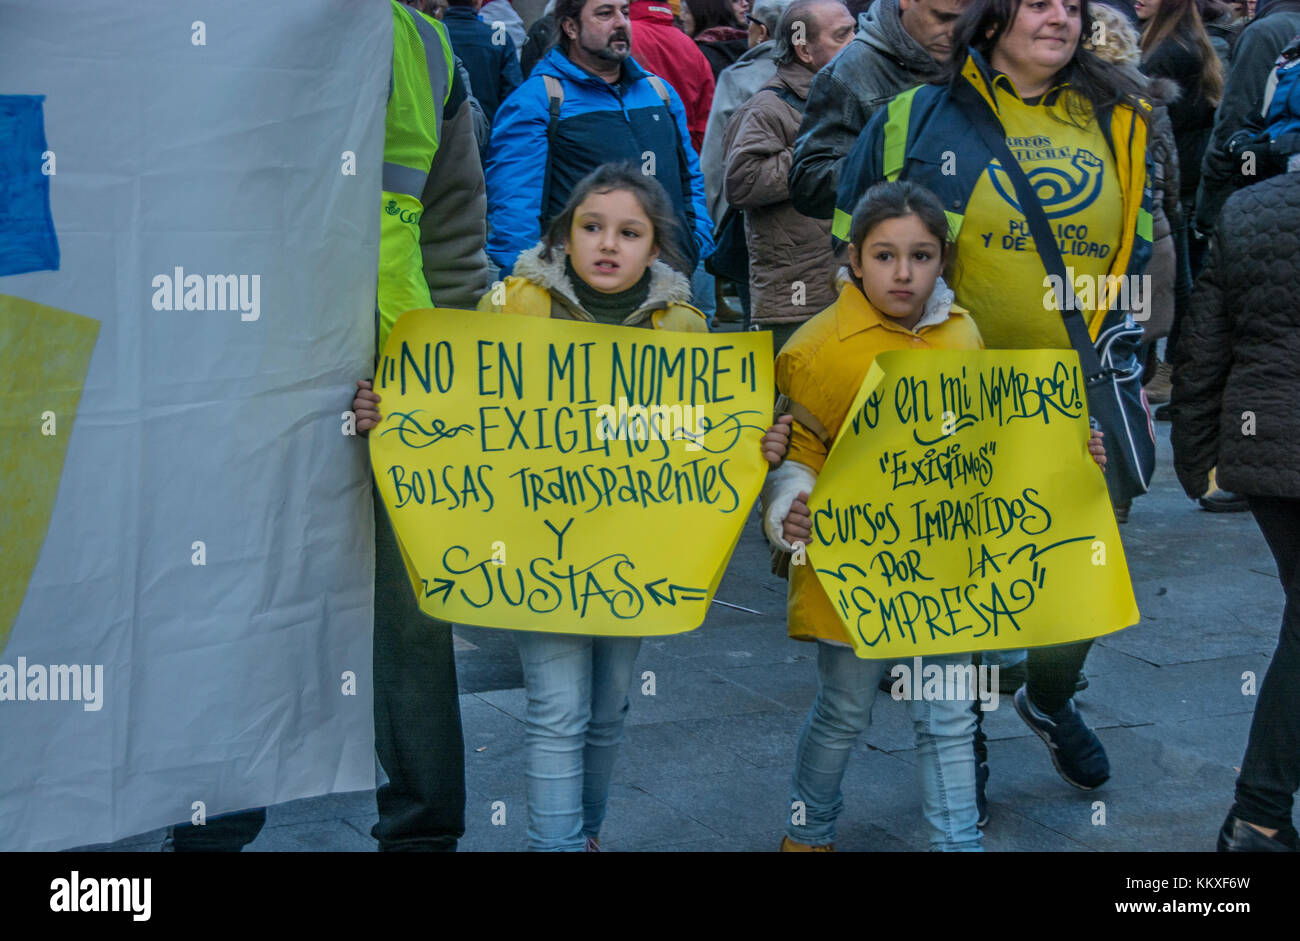 Madrid, Spagna. 2° dic, 2017. Posta lavoratori dimostra contro contratti di immondizia in Madrid Spagna Credito: Alberto Ramírez Sibaja/Alamy Live News Foto Stock